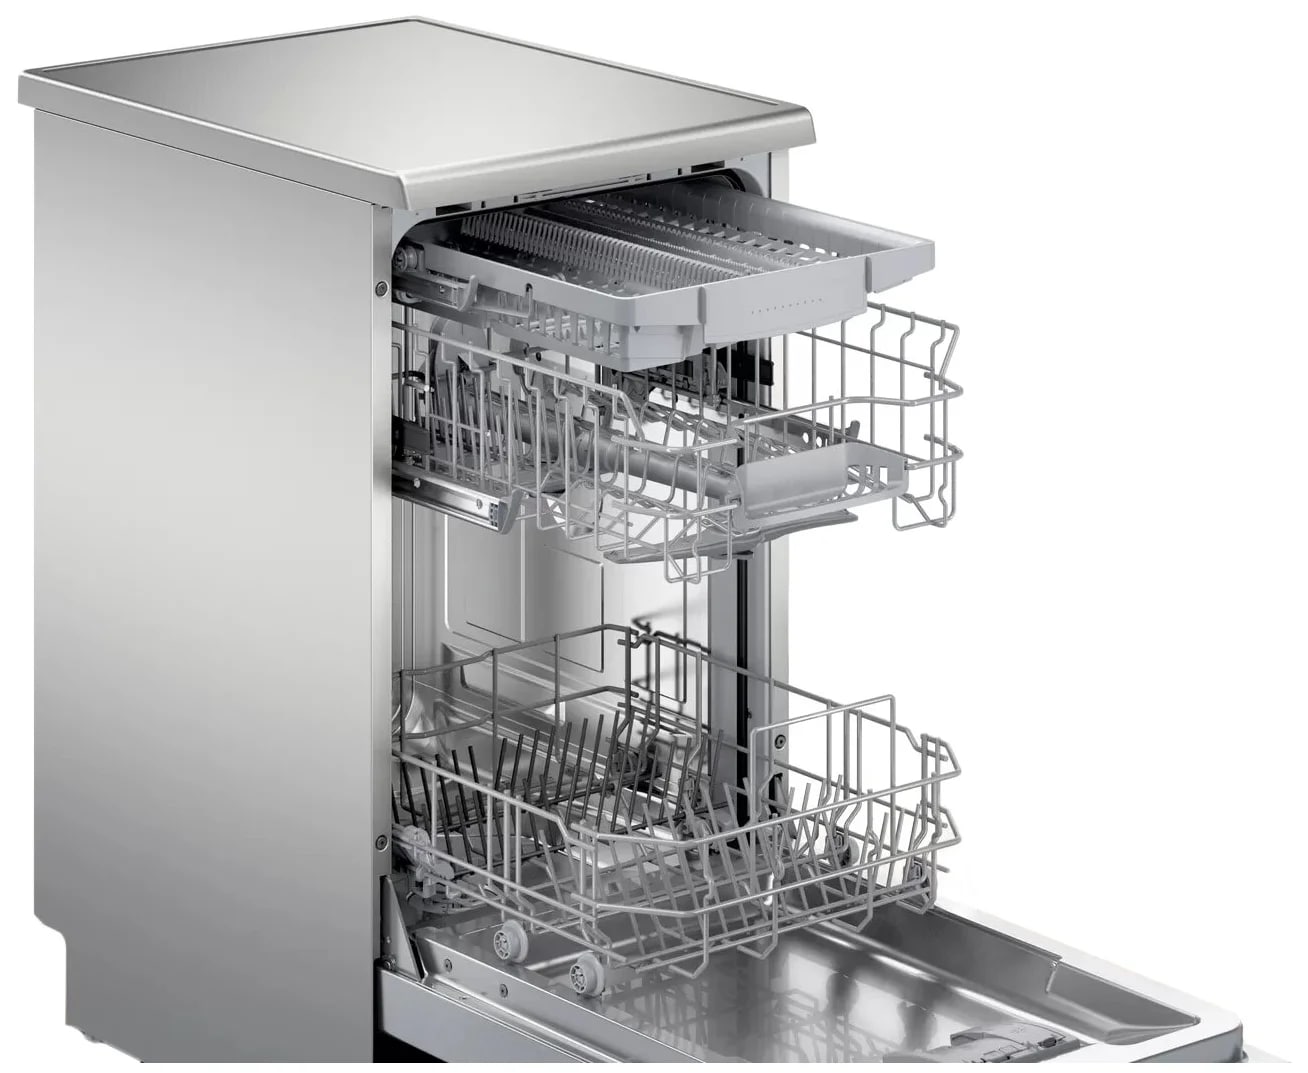 Посудомоечная 45см купить. Посудомоечная машина Bosch sps25cw03r. Посудомоечная машина Bosch SPS 25dw03 r. Посудомоечная машина Bosch 45. Посудомоечная машина бош 45 см отдельностоящая.